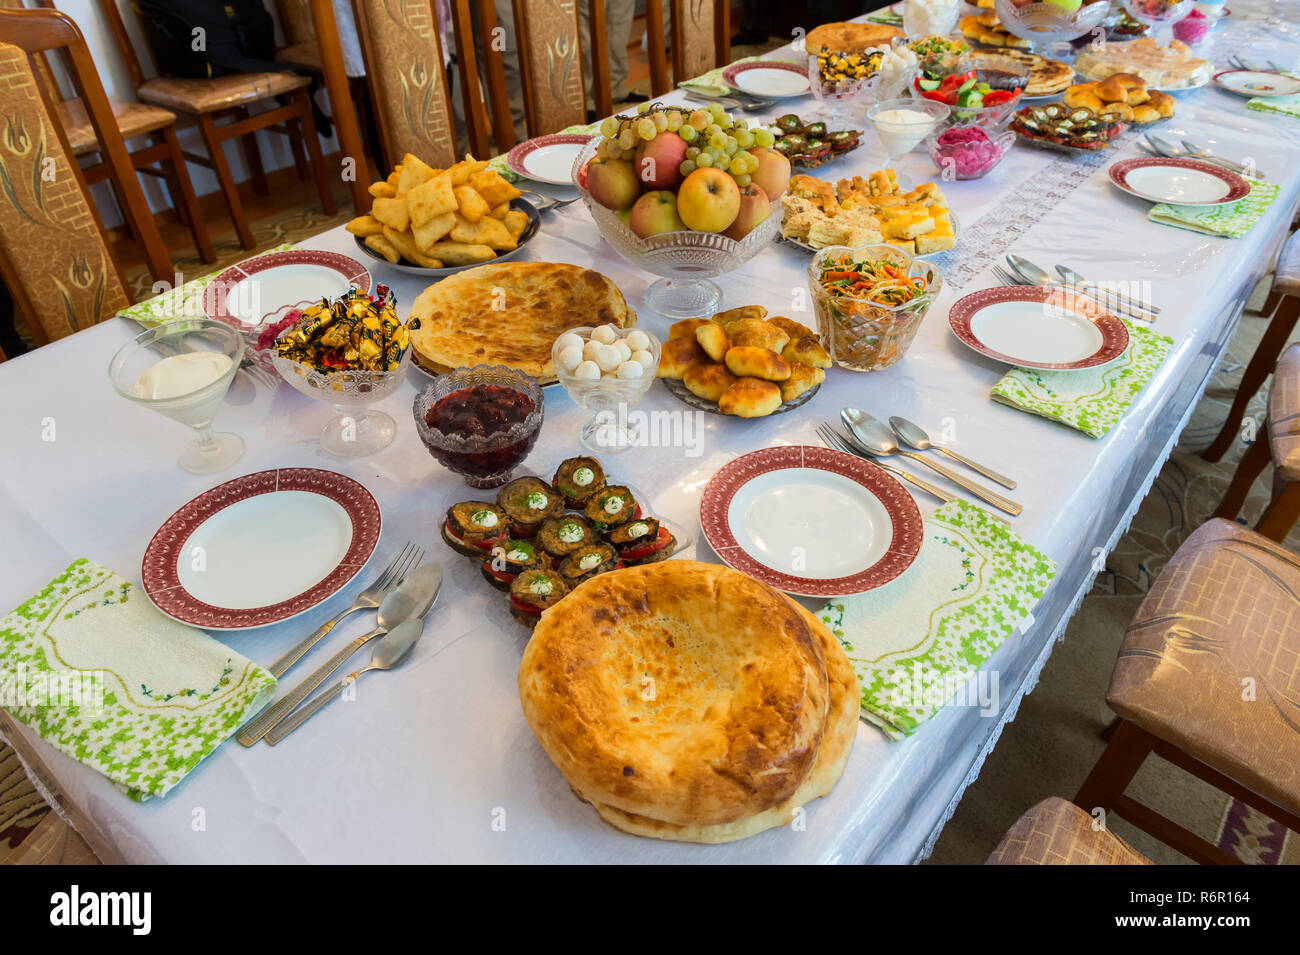 Tabla con comida para los huéspedes, Shymkent, región sur, Kazajstán, Asia Central Foto de stock